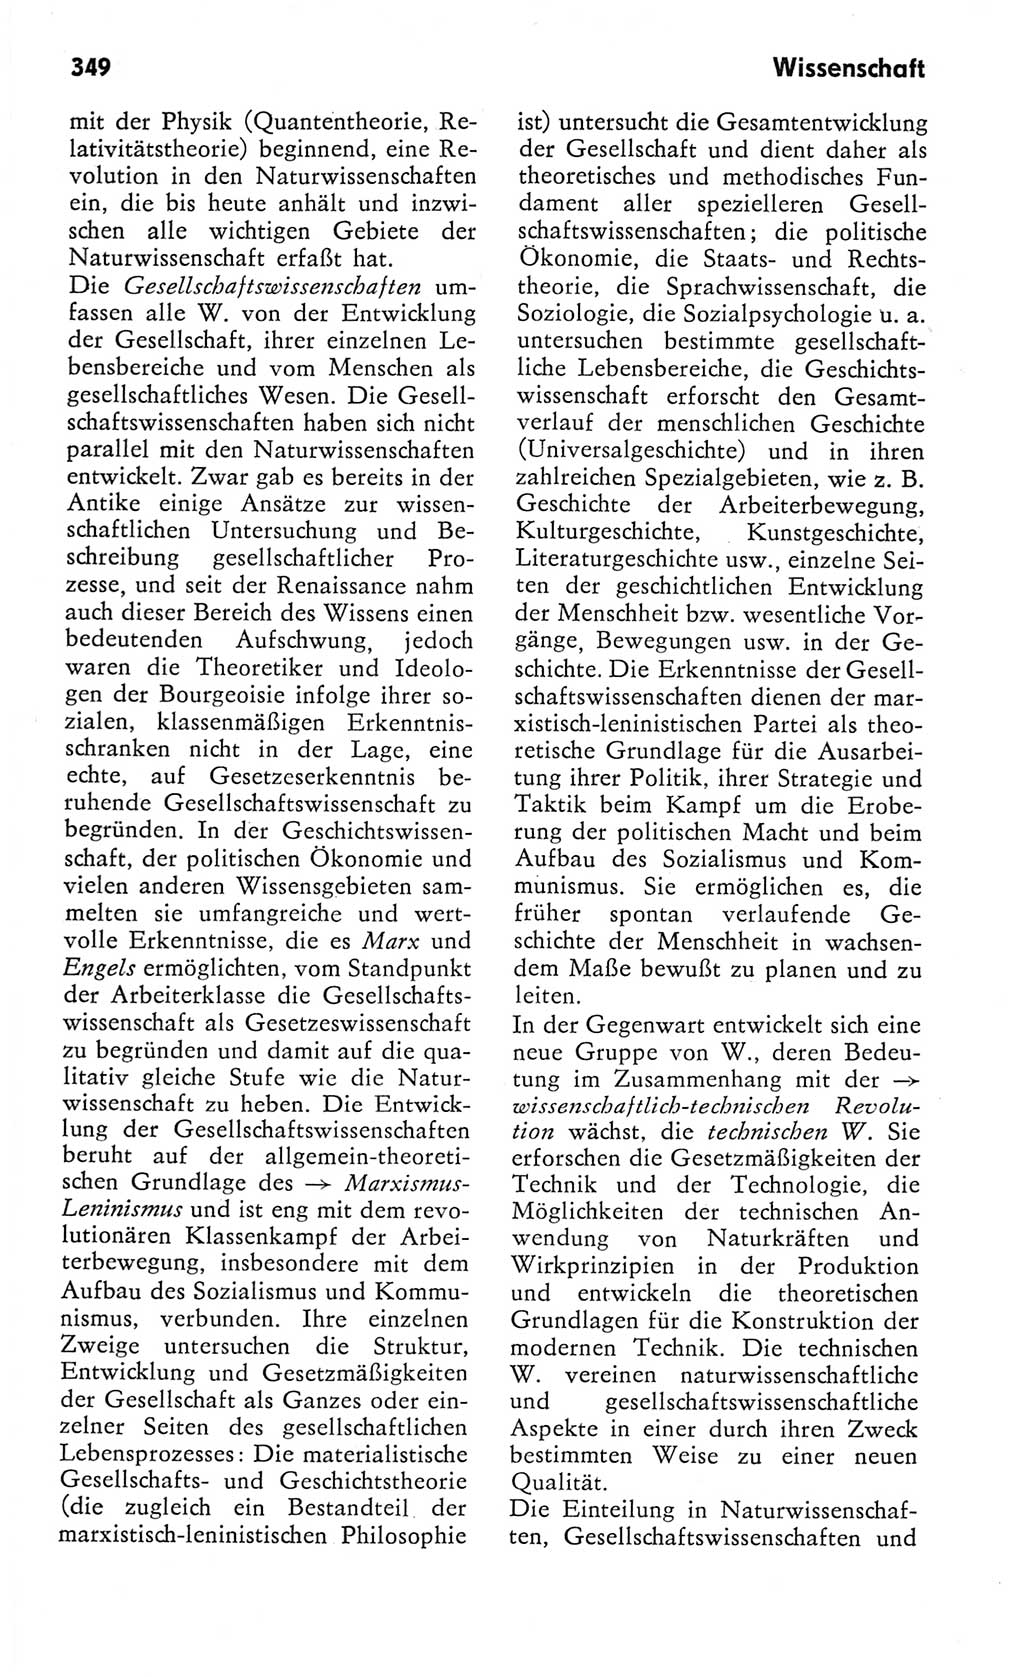 Kleines Wörterbuch der marxistisch-leninistischen Philosophie [Deutsche Demokratische Republik (DDR)] 1982, Seite 349 (Kl. Wb. ML Phil. DDR 1982, S. 349)